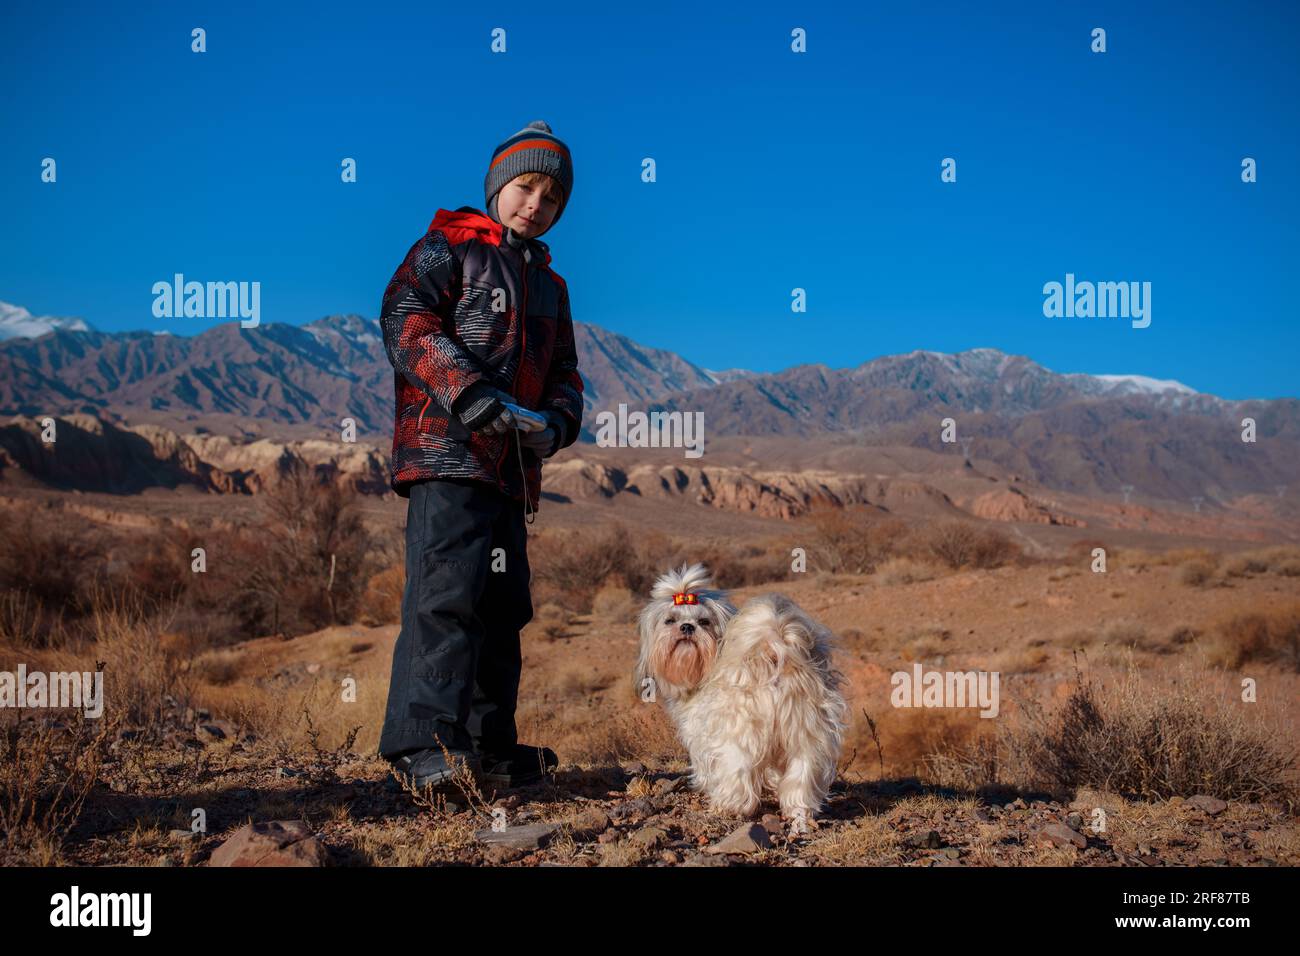 Kind mit Kamera in den Händen und Shih Tzu-Hund, der auf dem Hintergrund der Berge steht Stockfoto